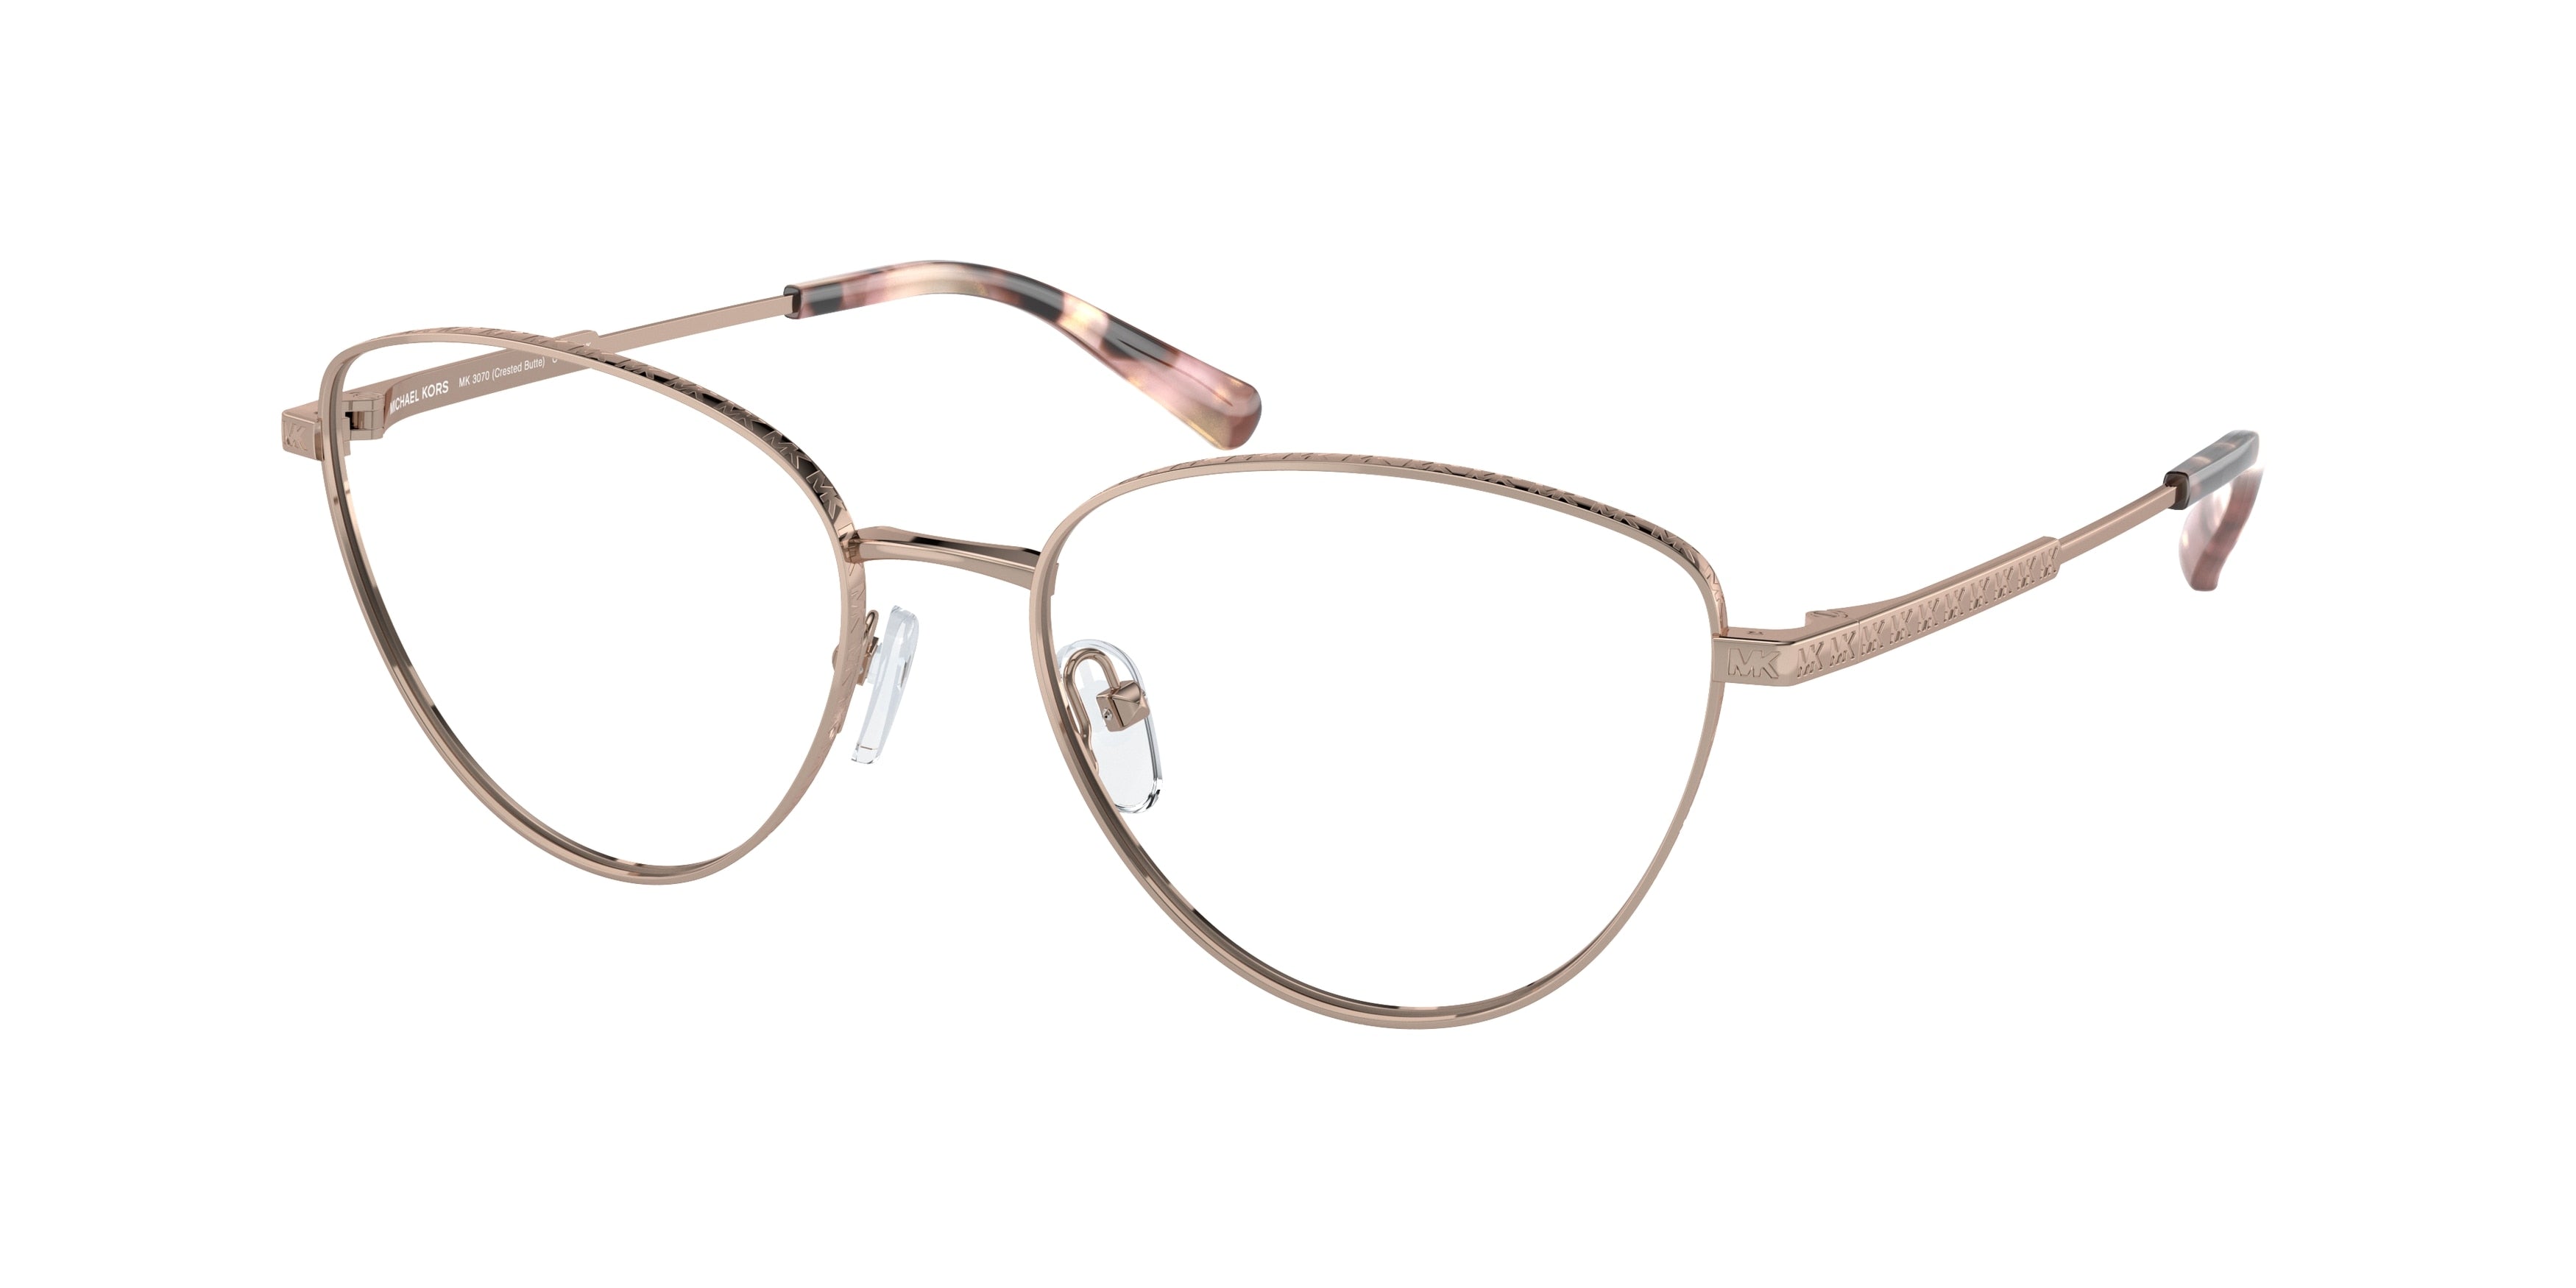 Michael Kors CRESTED BUTTE MK3070 Cat Eye Eyeglasses  1108-Rose Gold 55-140-17 - Color Map Gold